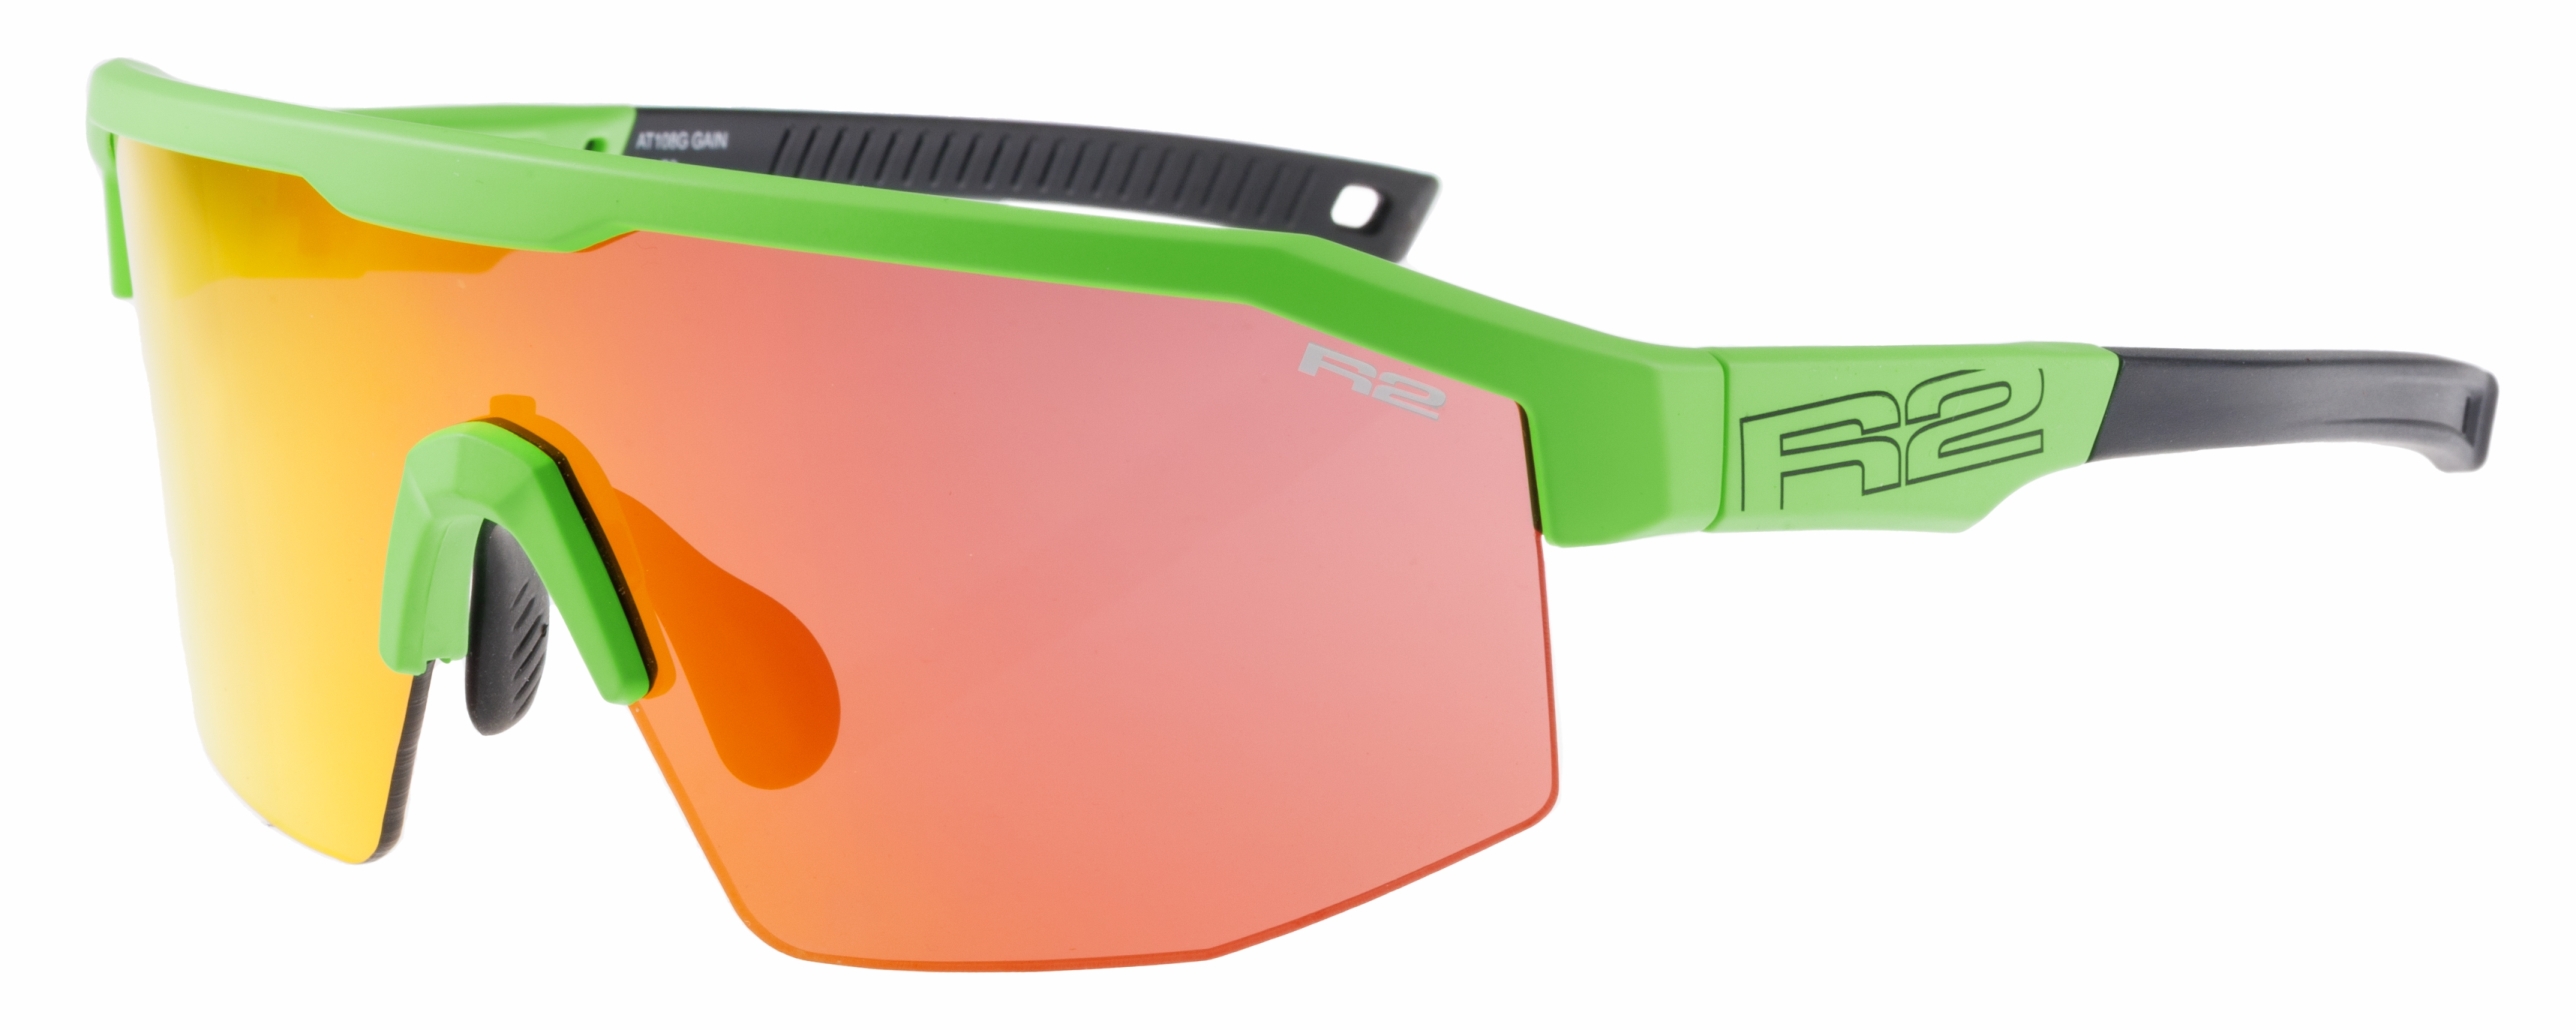 HD sport sunglasses R2 GAIN AT108G standard